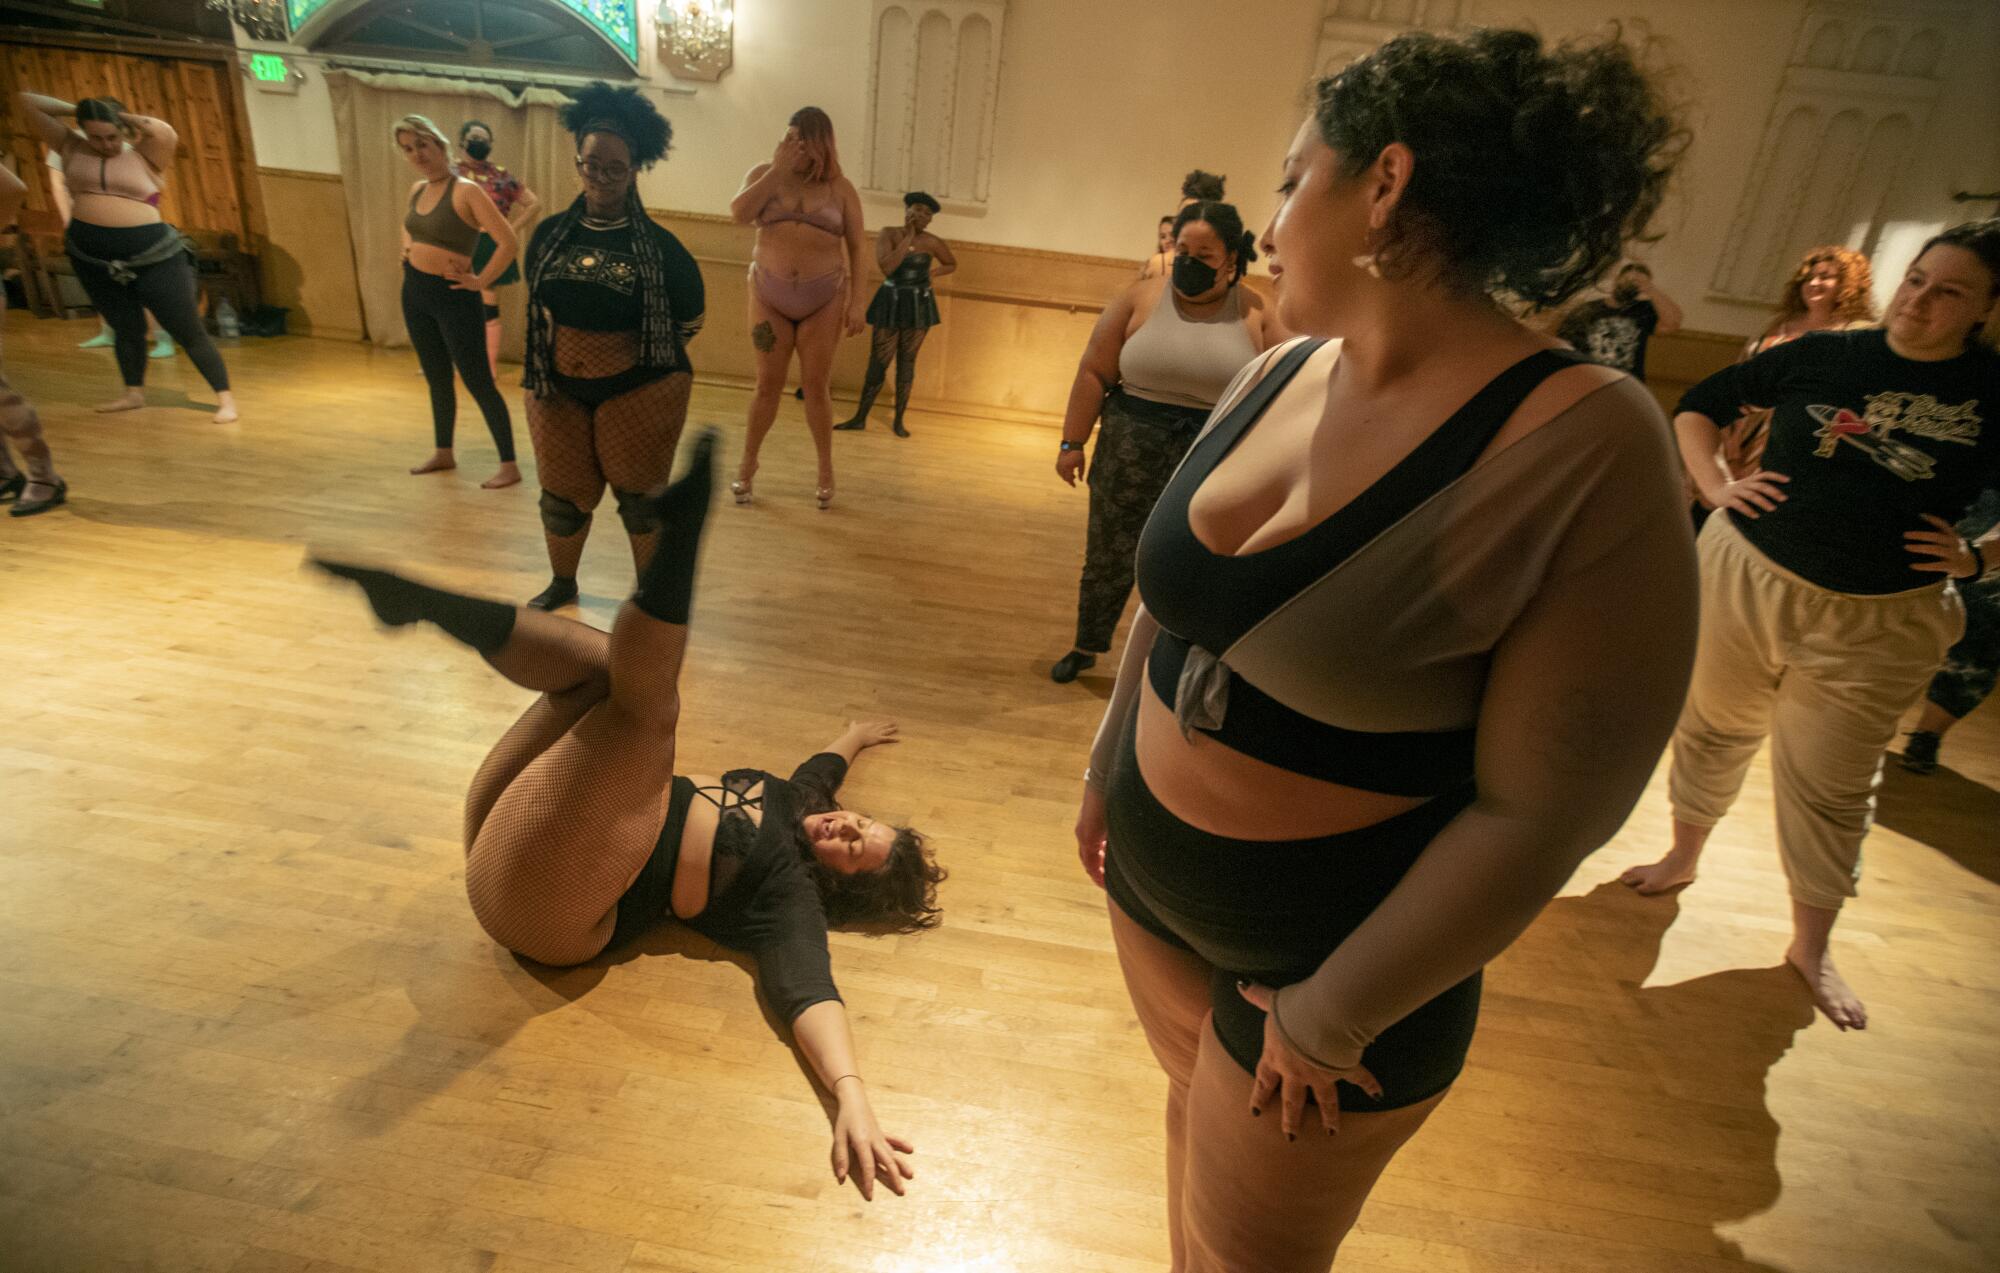 Thick Strip burlesque revue celebrates plus-size beauty - Los Angeles Times